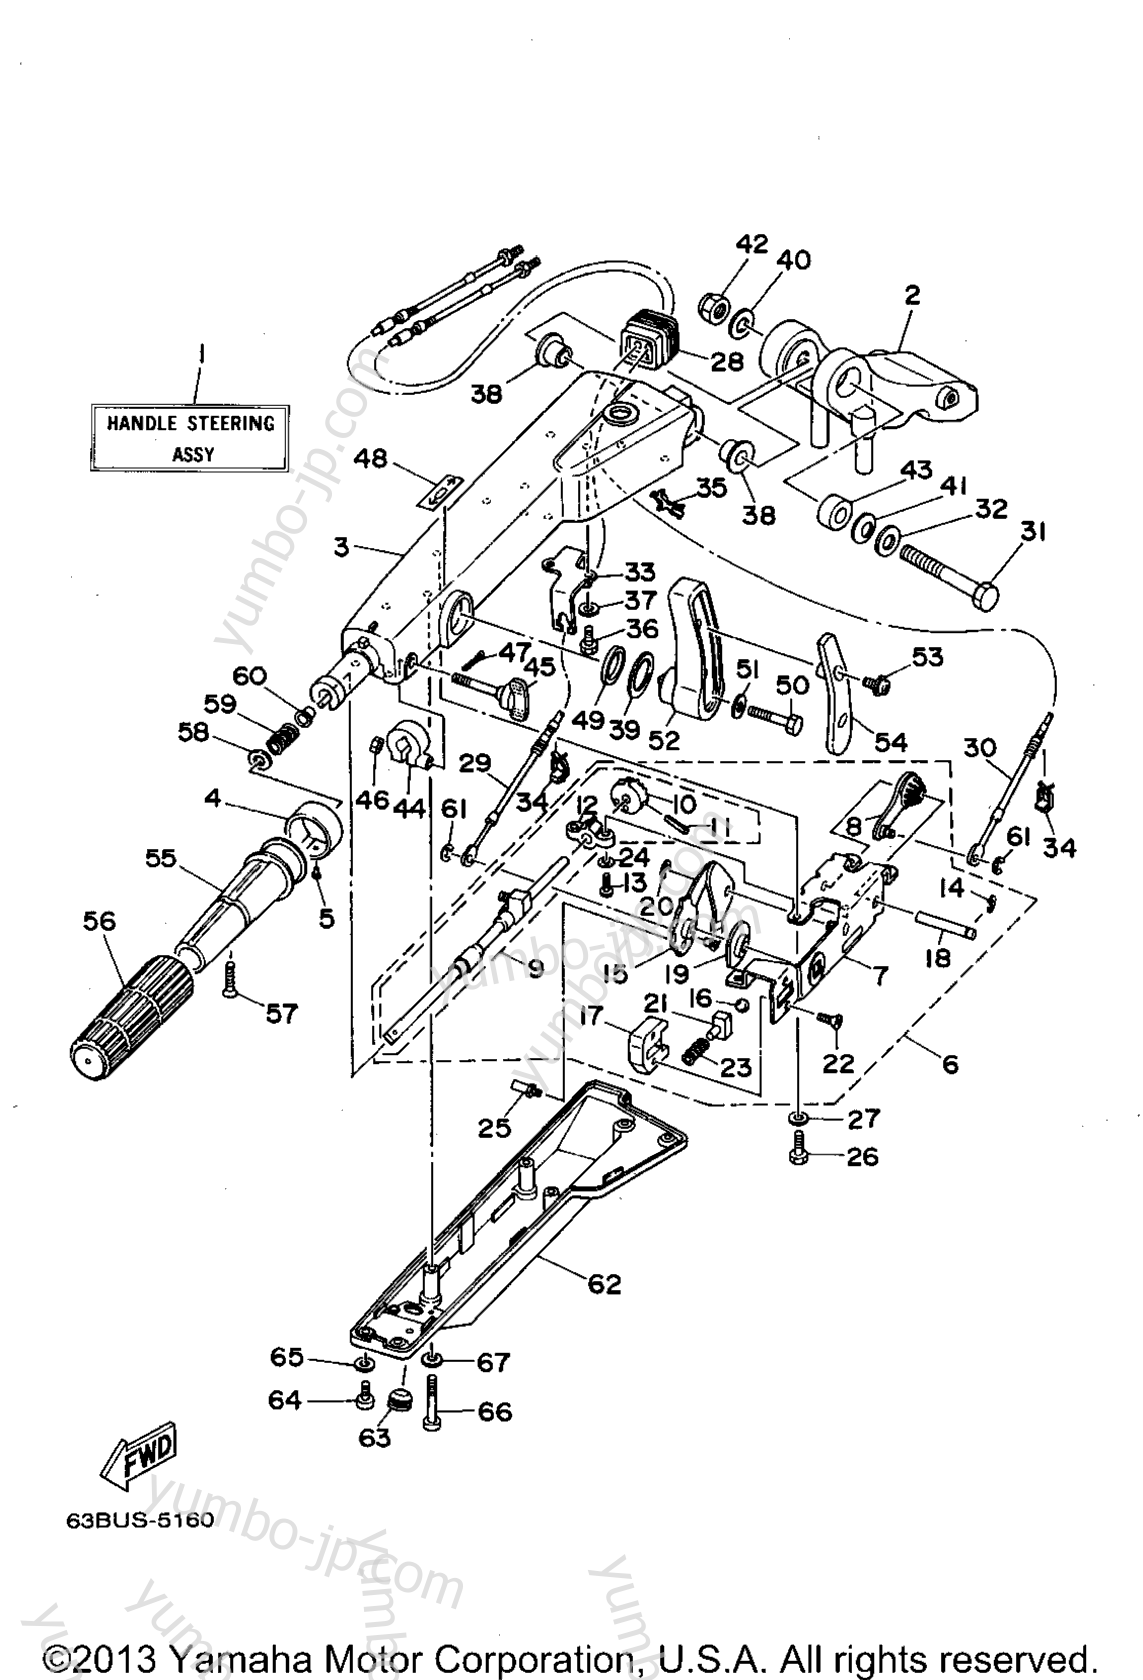 Steering для лодочных моторов YAMAHA 40ESRT 1995 г.